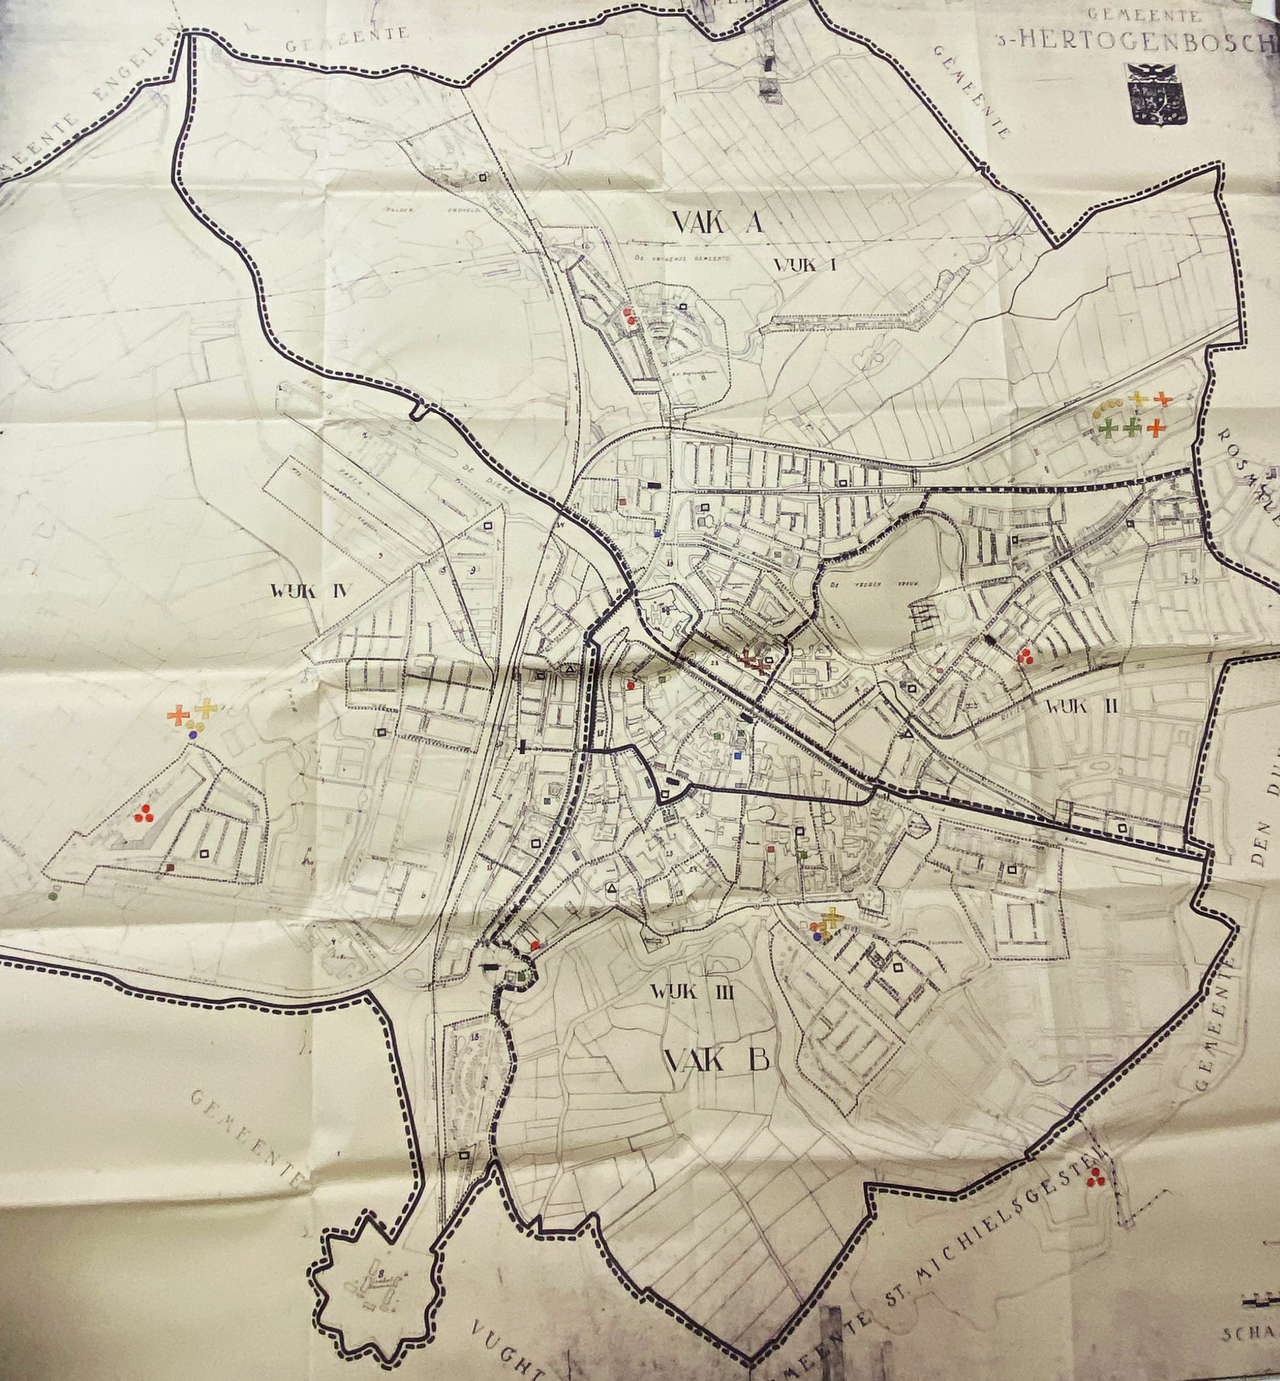 Kaart van 's-Hertogenbosch uit 1952 waarop de te bouwen schuilkelders zijn aangegeven